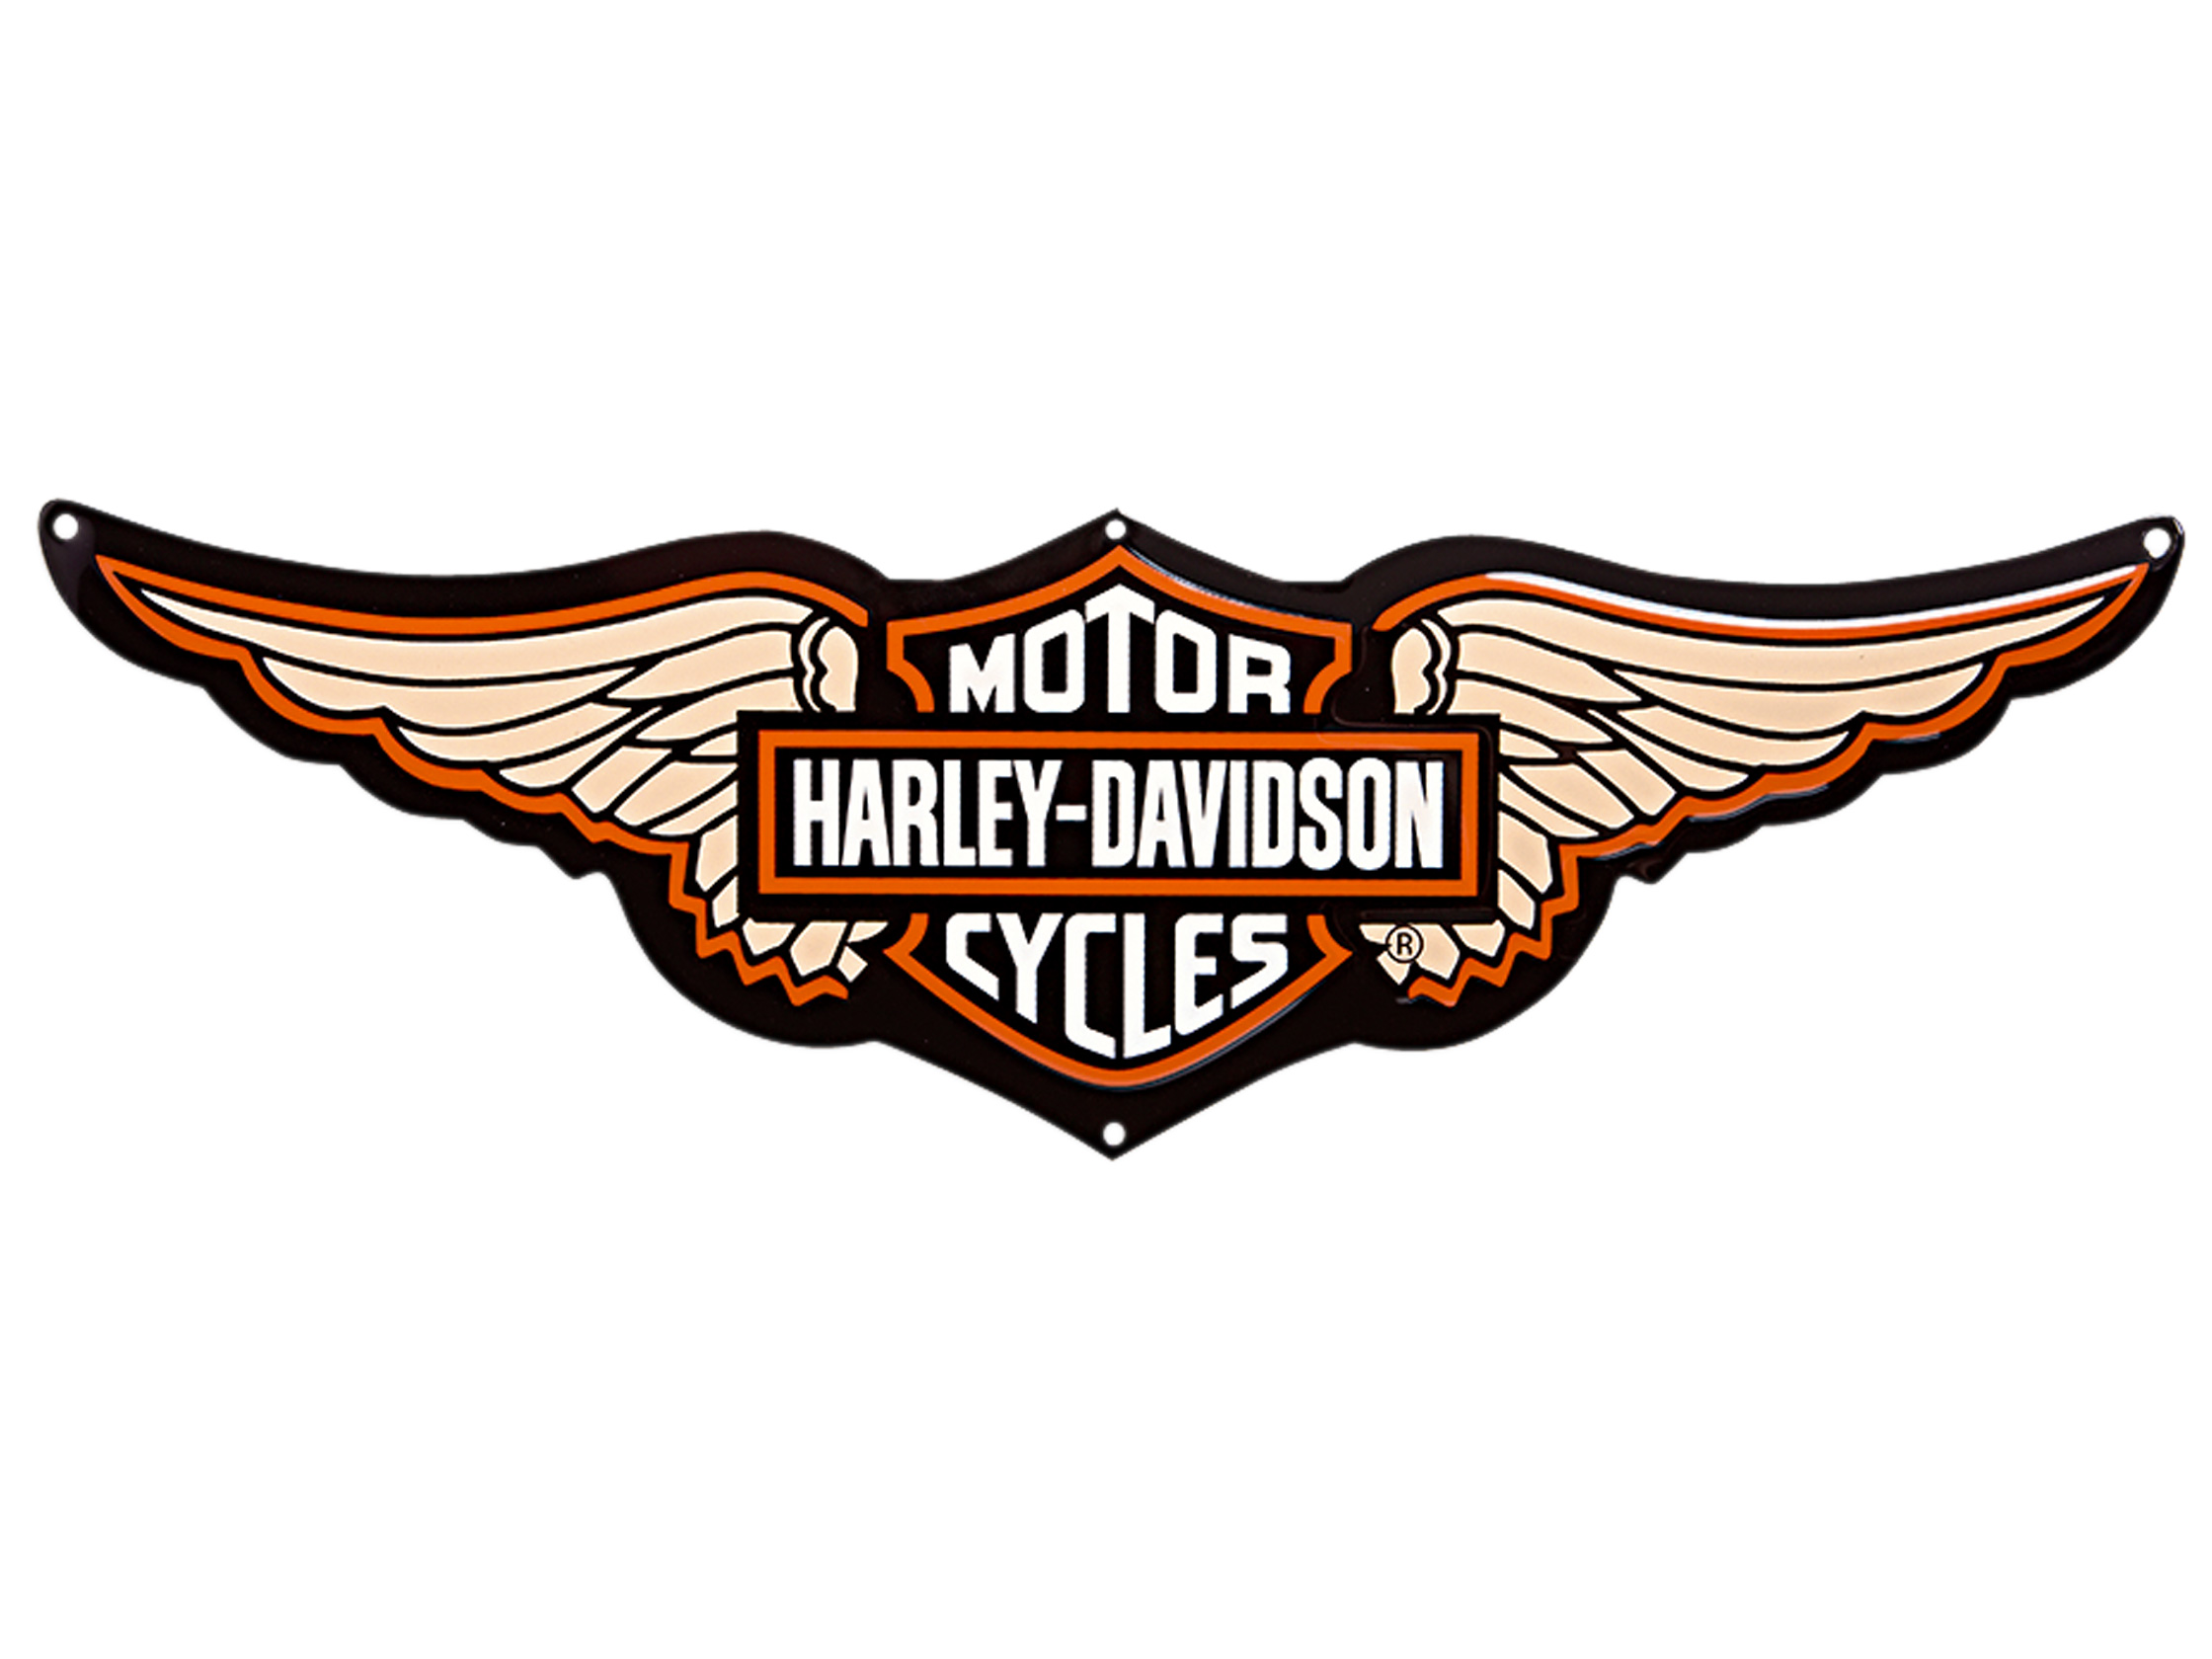 Harley Davidson Logos Free | Free Download Clip Art | Free Clip ...